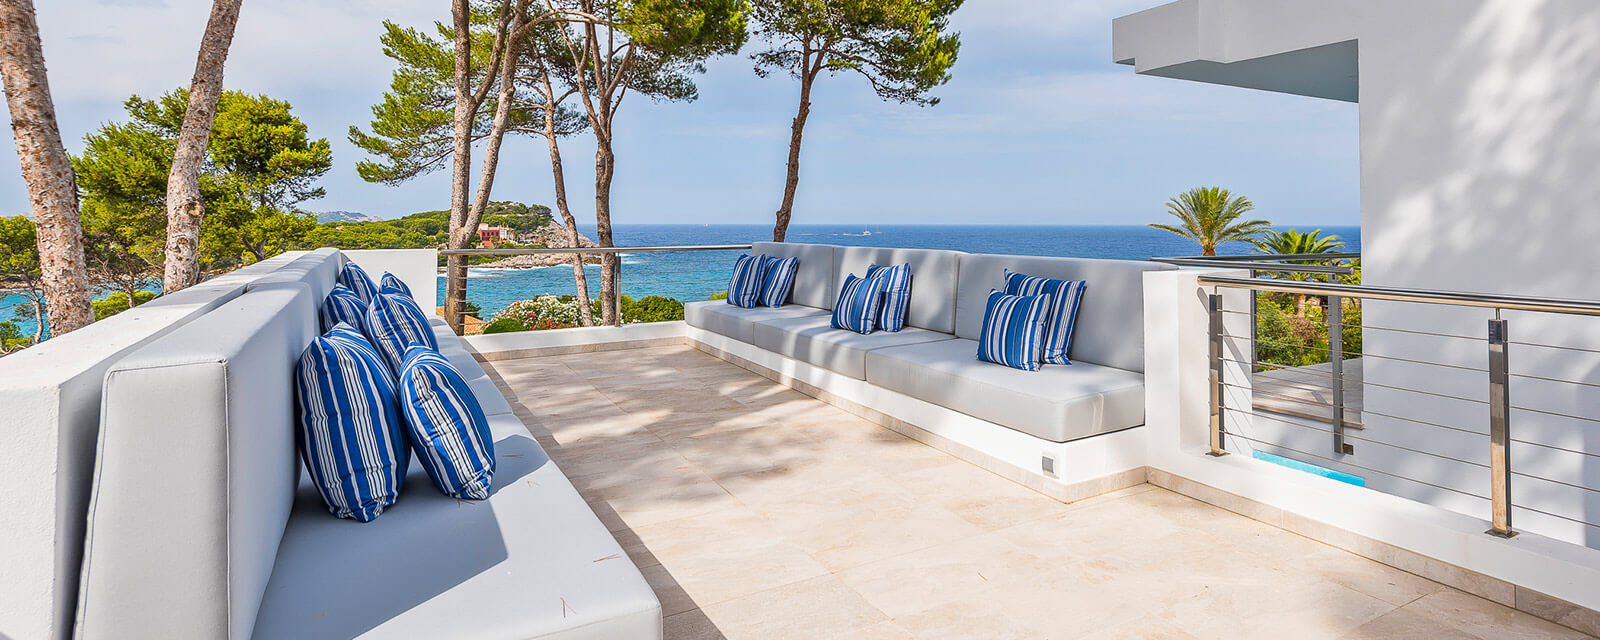 Exklusive Luxusvilla Mallorca am Meer mieten